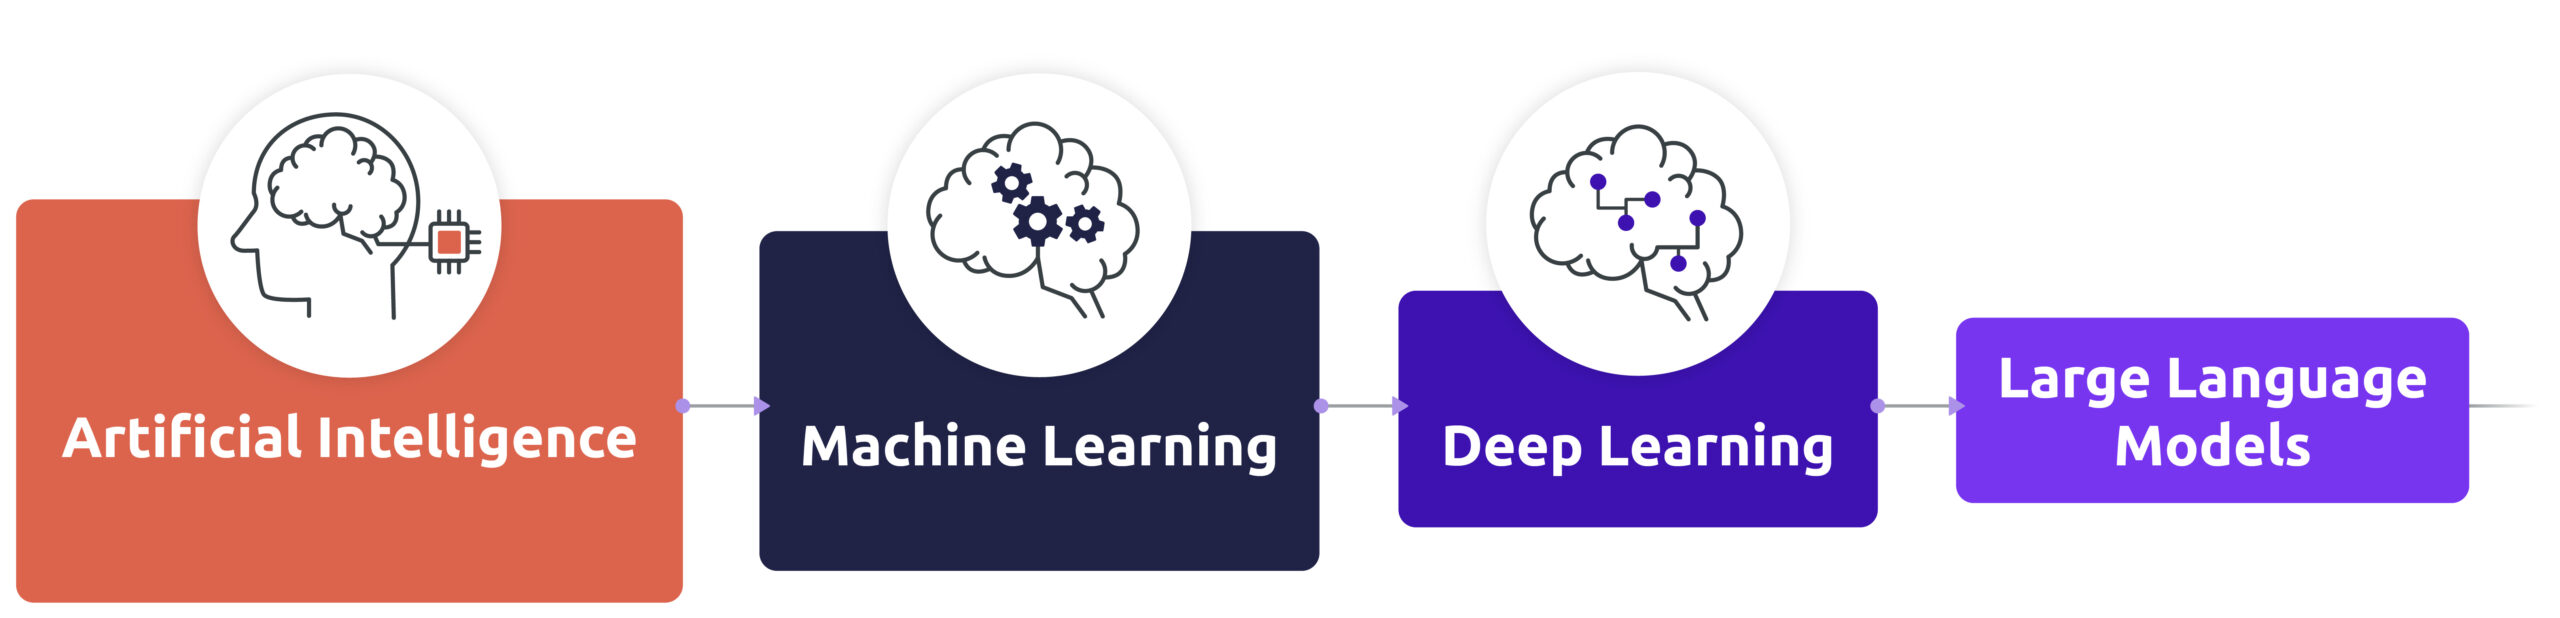 Die verschiedenen Arten von KI, die von Diabolocom unterstützt werden: Maschinelles Lernen, Deep Learning, große Sprachmodelle